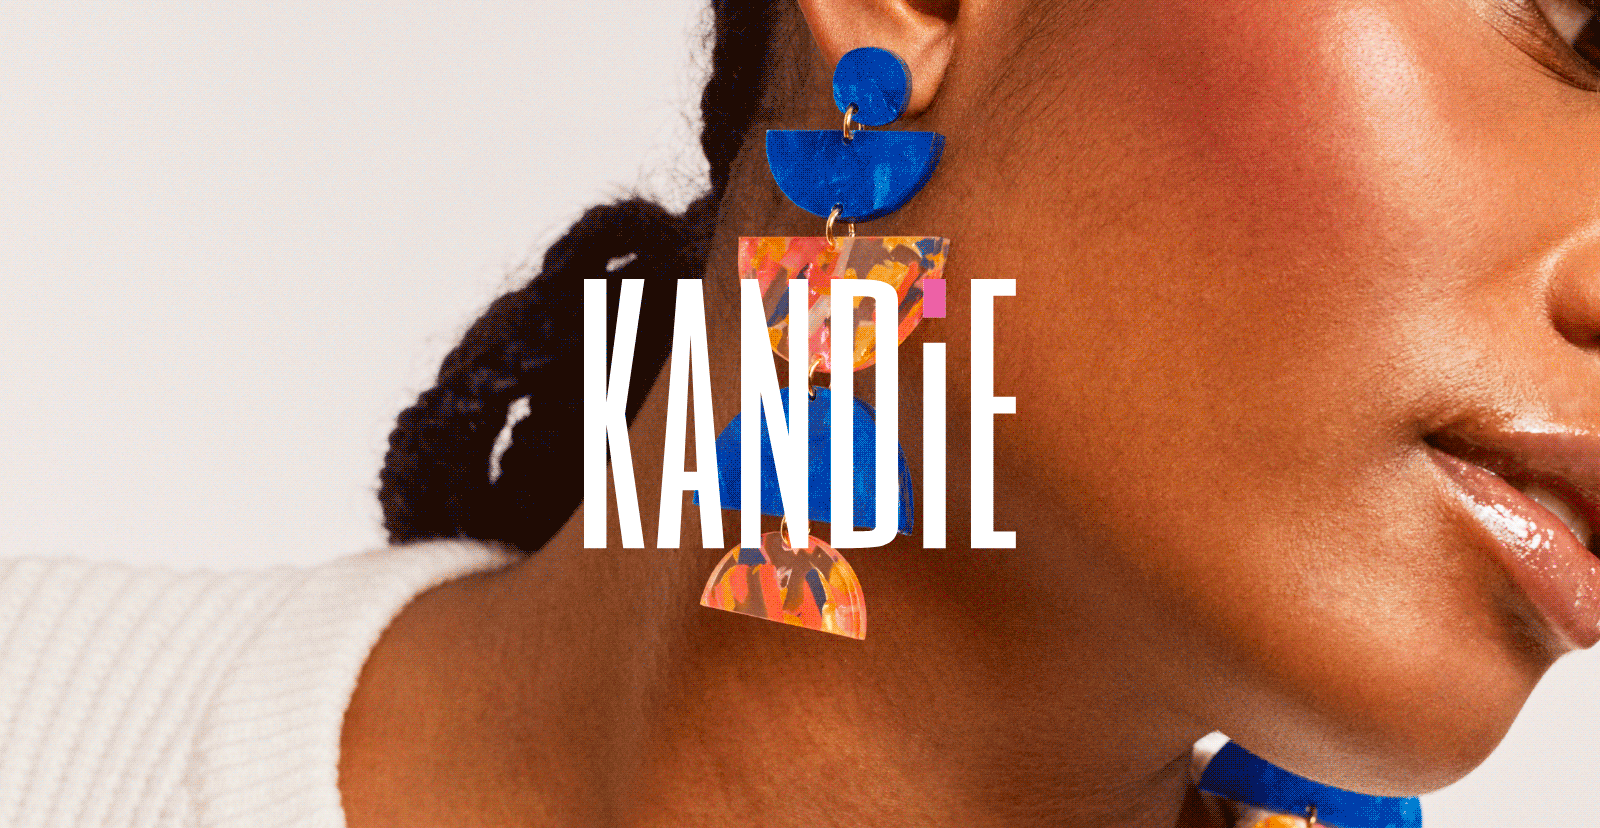 kandie-head2-1